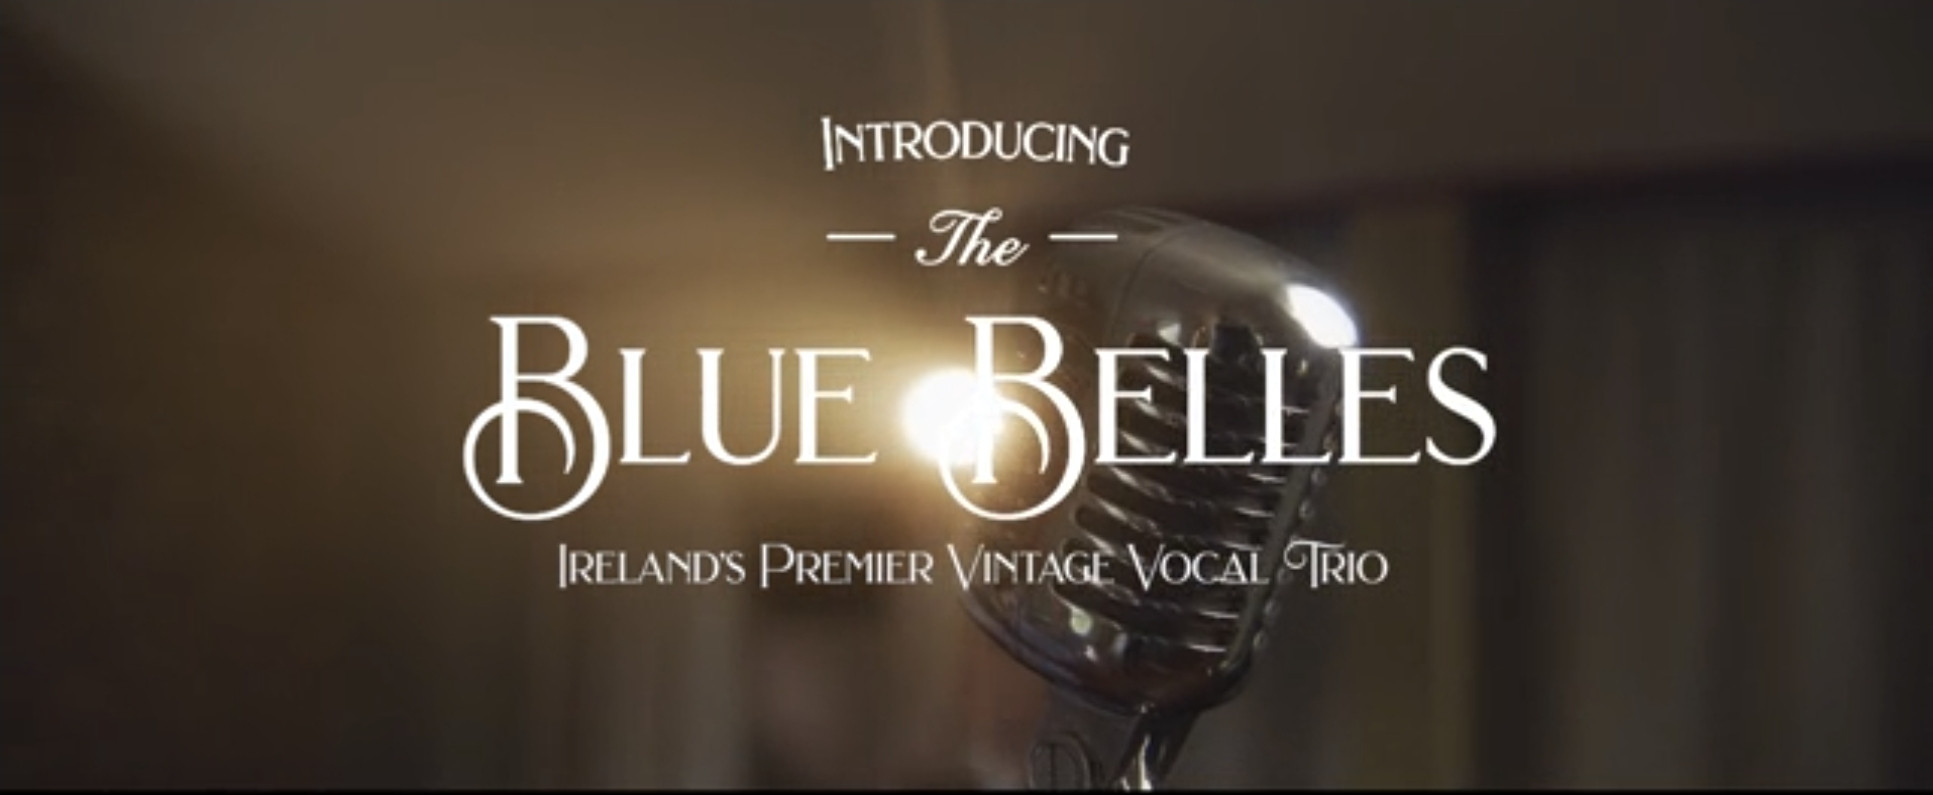 The Blue Belles